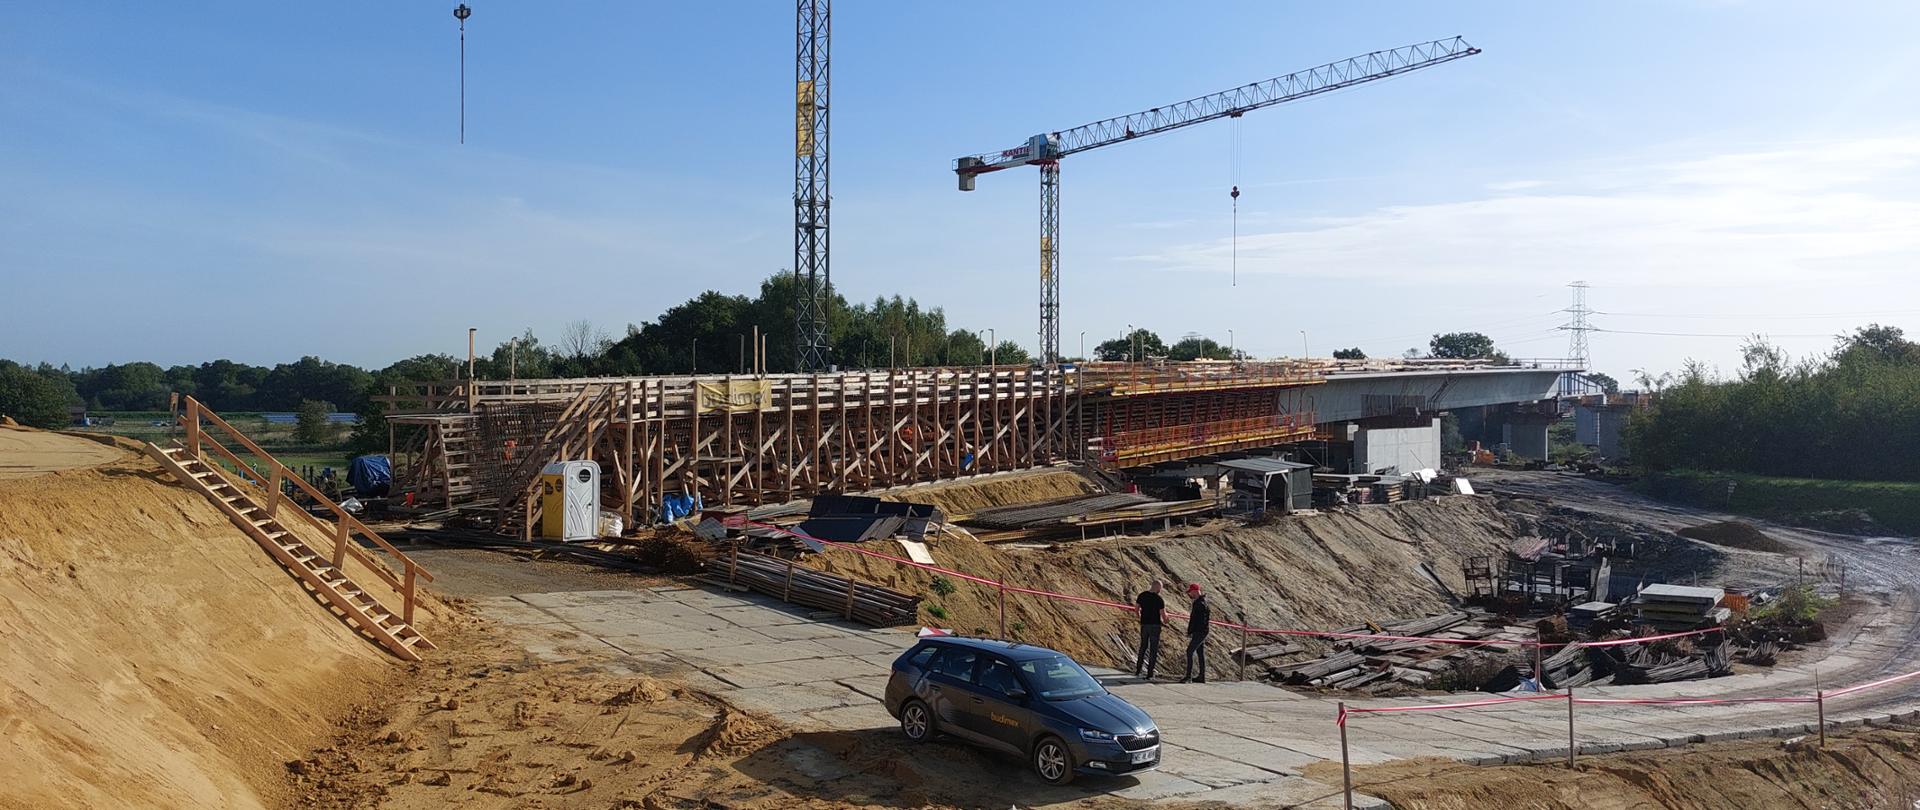 budowa obwodnicy Oświęcimia, most nad Wisłą - most budowy w technologii nasuwu, widoczny szalunek początkowego segmentu i kilka segmentów nasuniętych na podpory